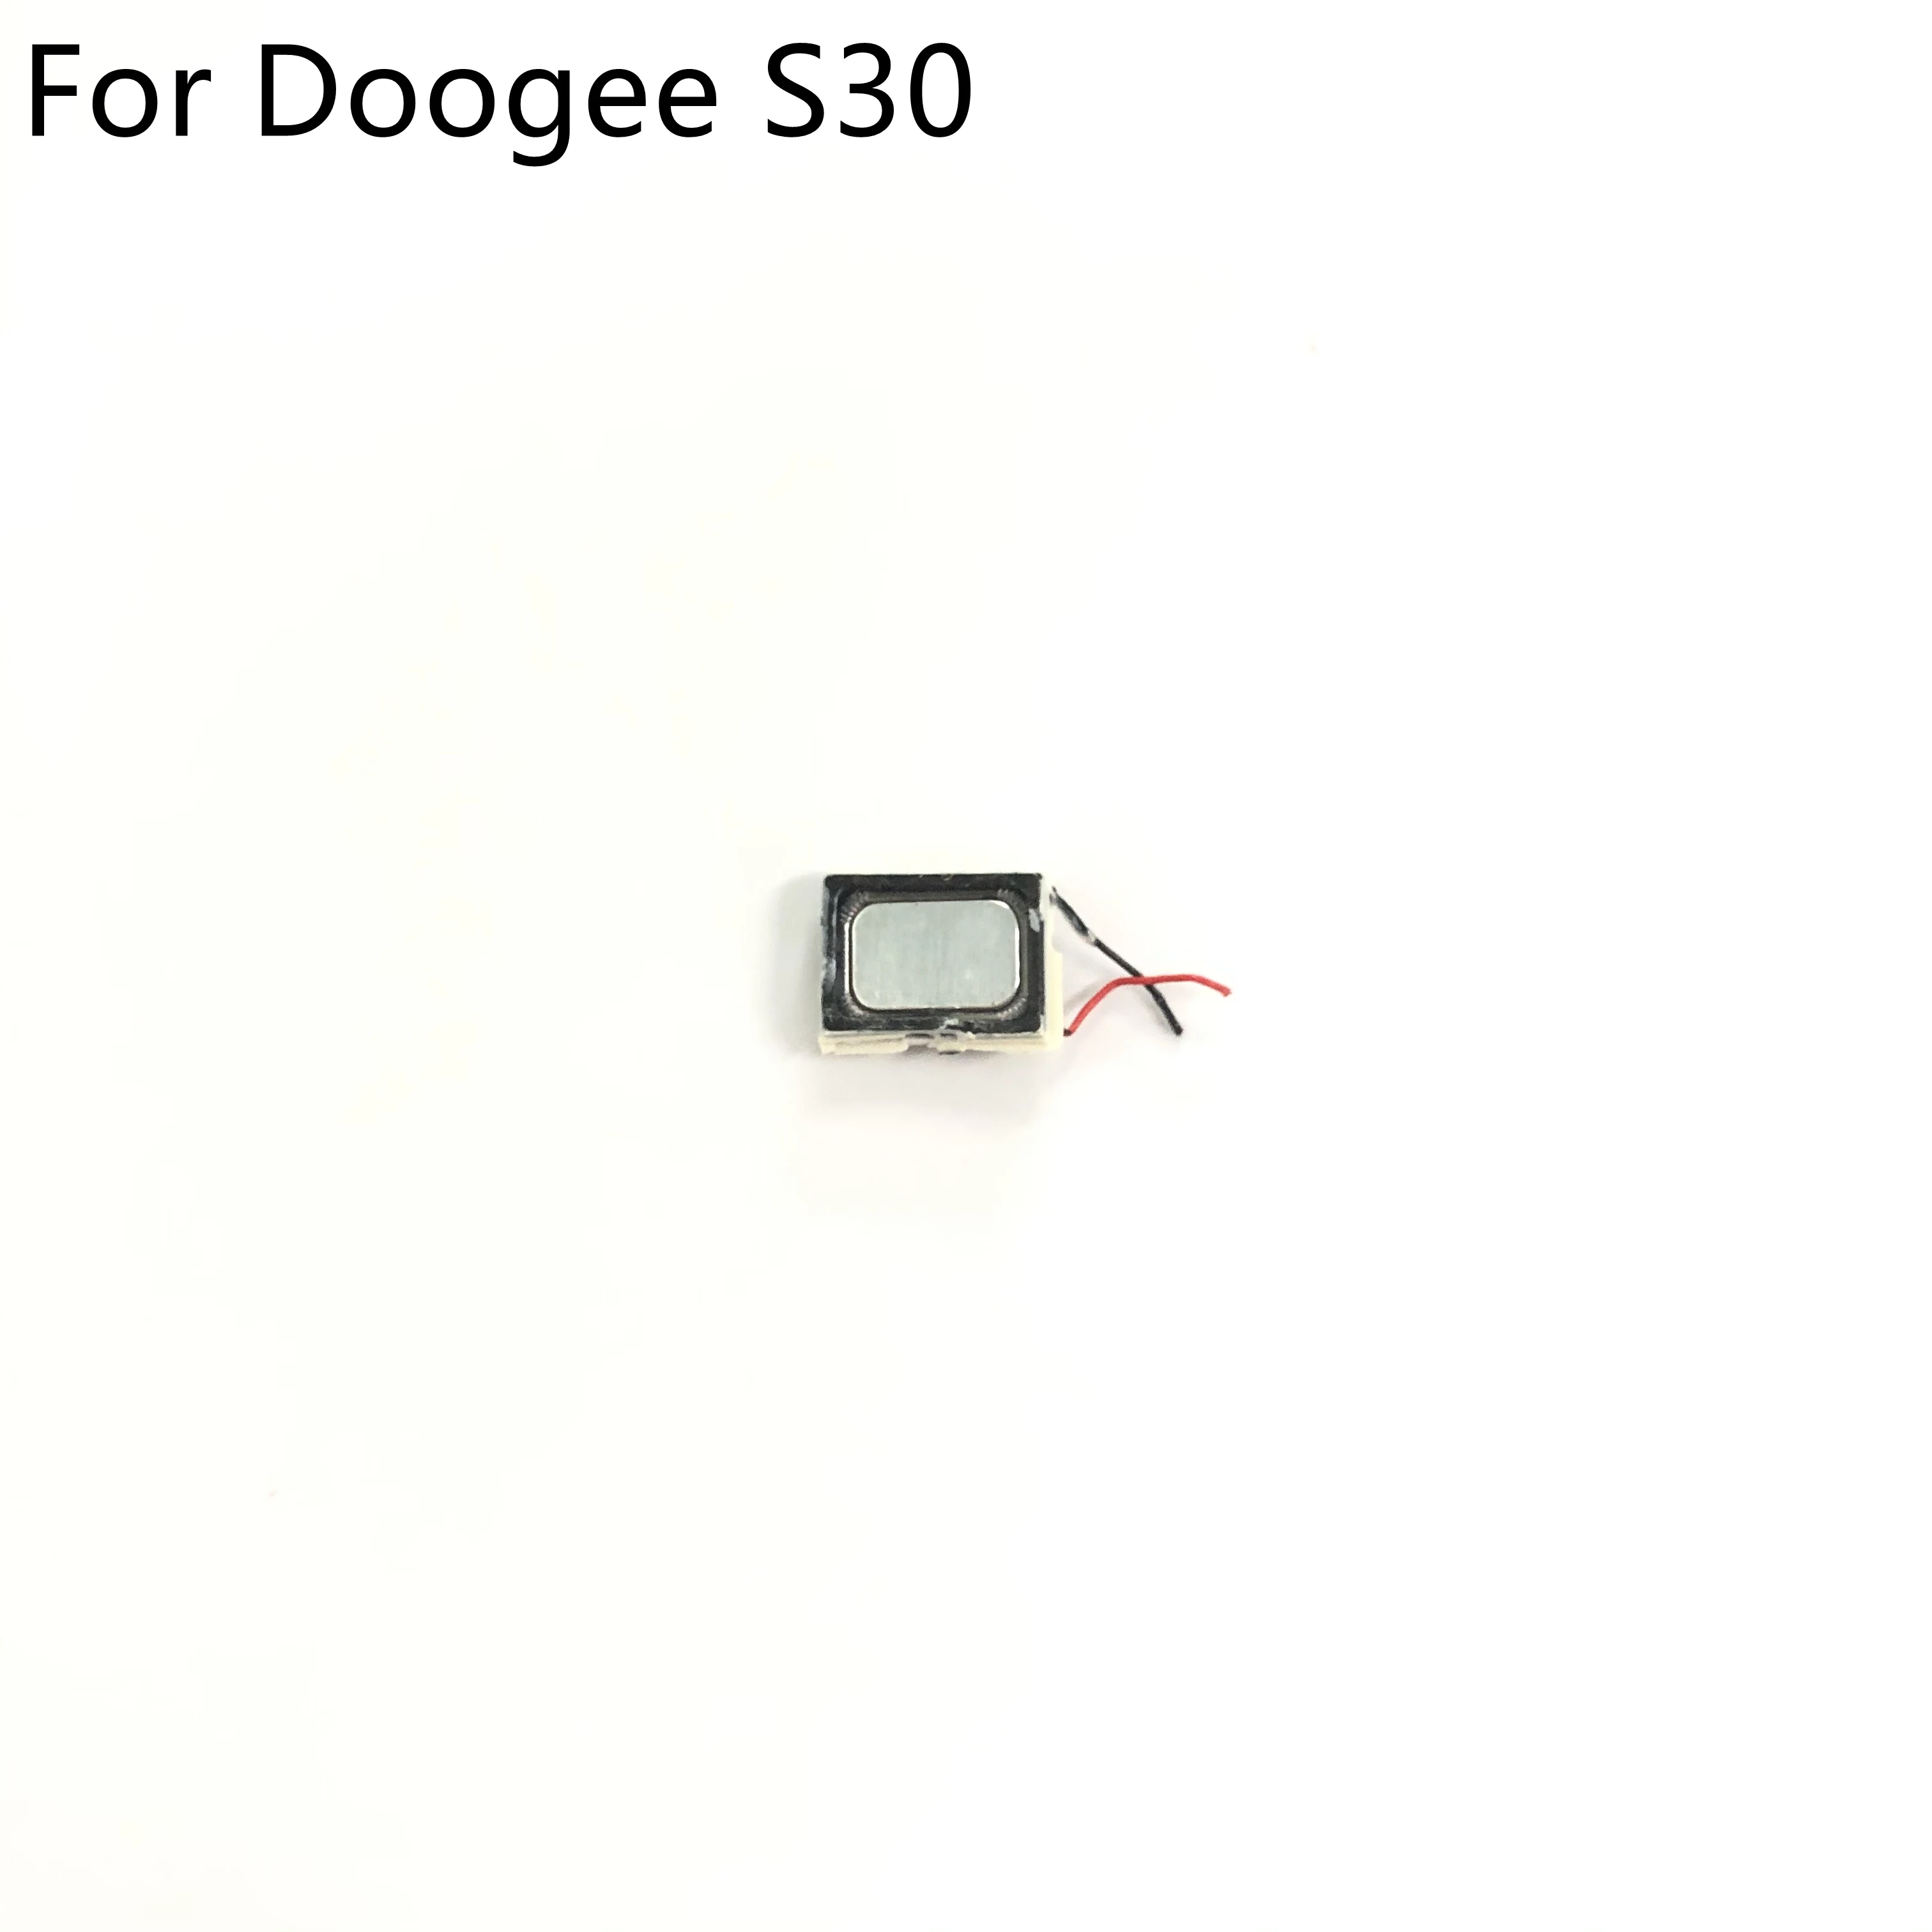 Loud Speaker Buzzer Ringer For DOOGEE S30 MTK6737 Quad Core 5.0"HD 1280x720 Smartphone